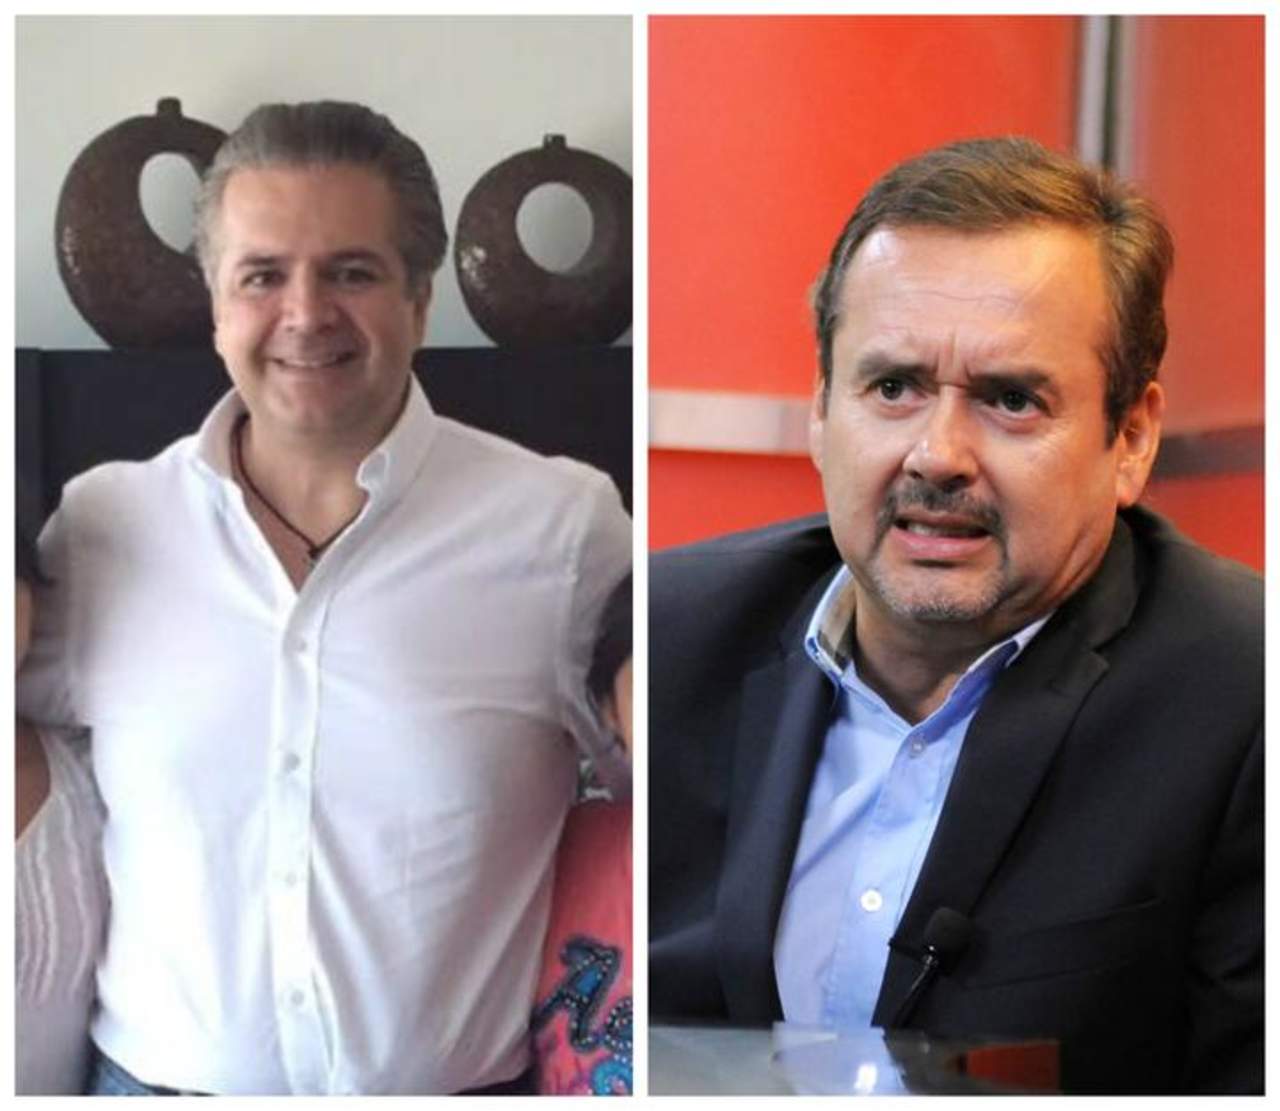 Los alcaldes de Acuña, Evaristo Lenin (izq) y de Monclova, Gerardo García Castillo, pidieron licencia para contender por la guberanatura de Coahuila. (ESPECIAL)

